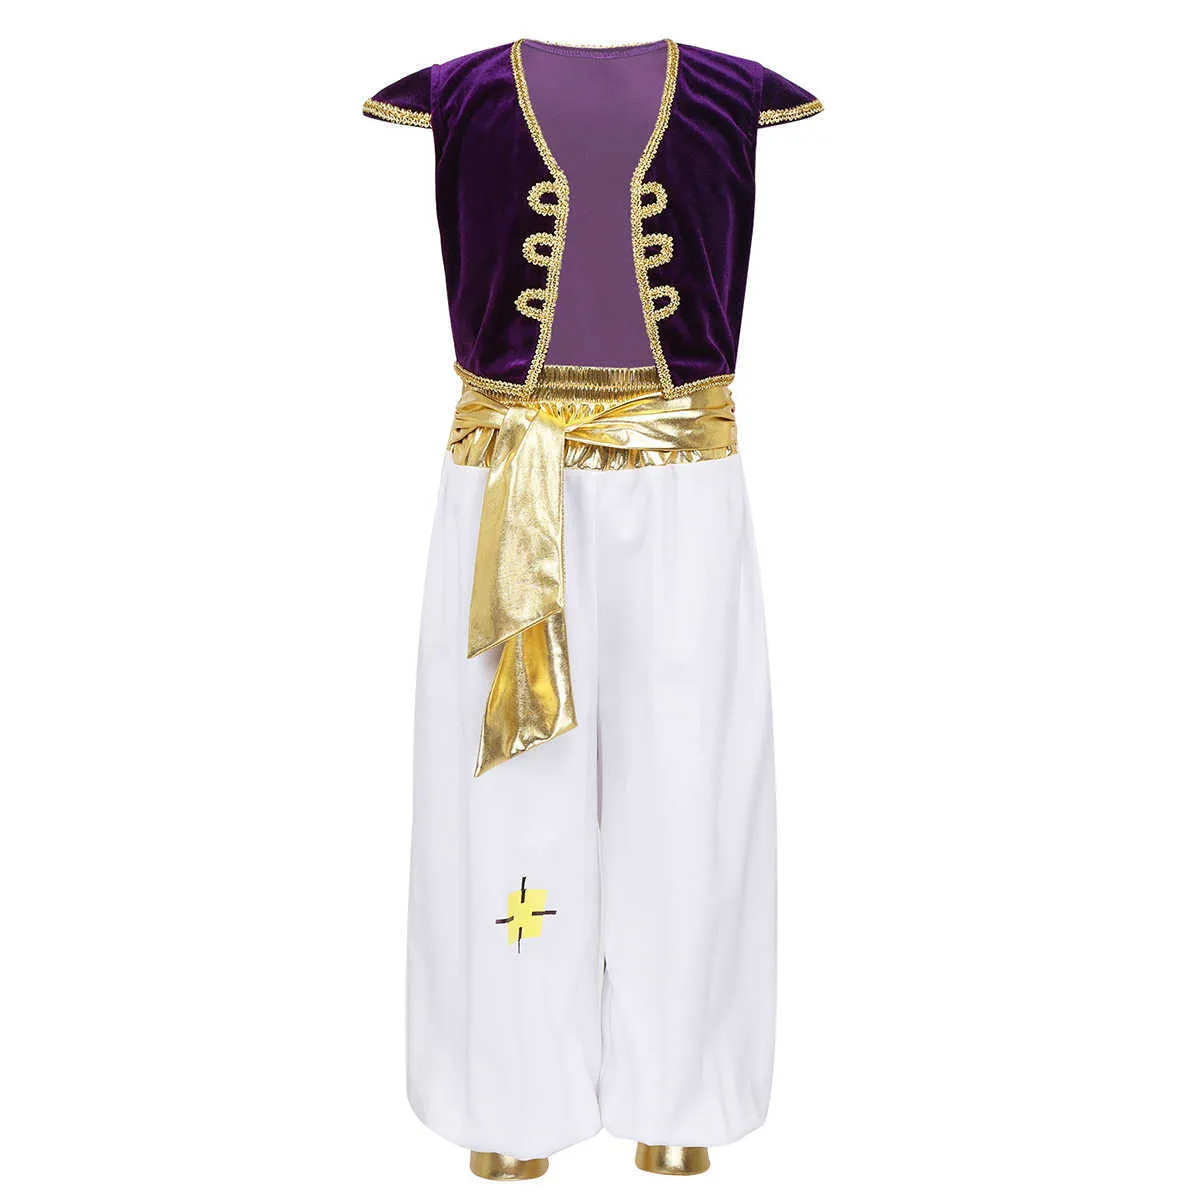 Kinder Jungen Kinder Arabische Prinz Lampe Cosplay Kostüme Cap Sleeves Weste Weste mit Hosen Set für Halloween -Partys Kleider Q0910